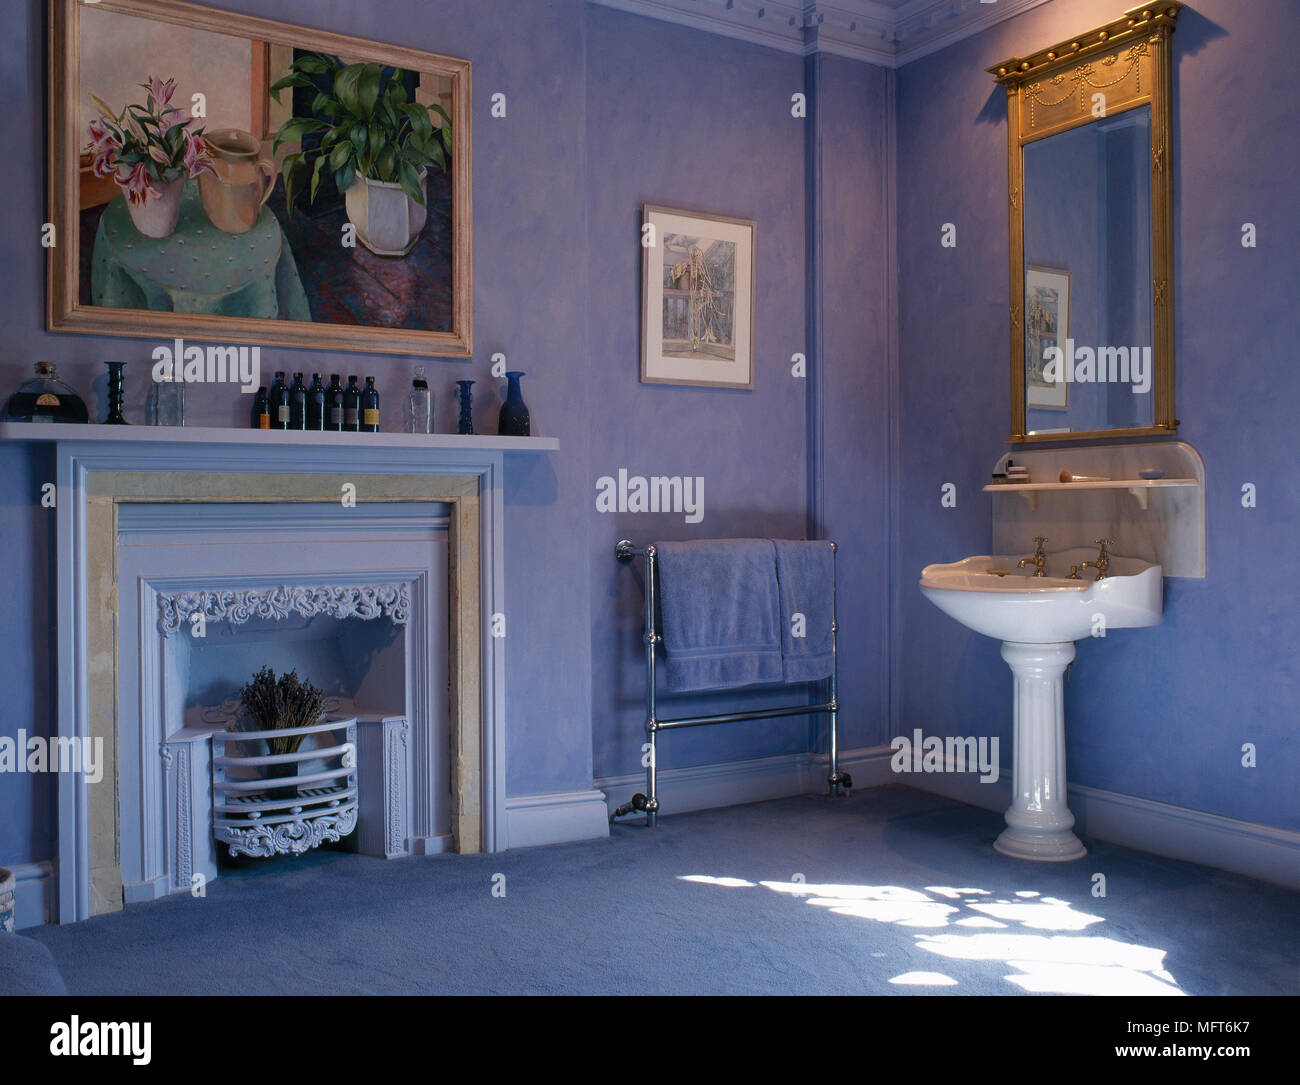 Bleu traditionnel, une salle de bains privative est équipée d'un lavabo, miroir doré, peint cheminée, et d'art encadrées. Banque D'Images